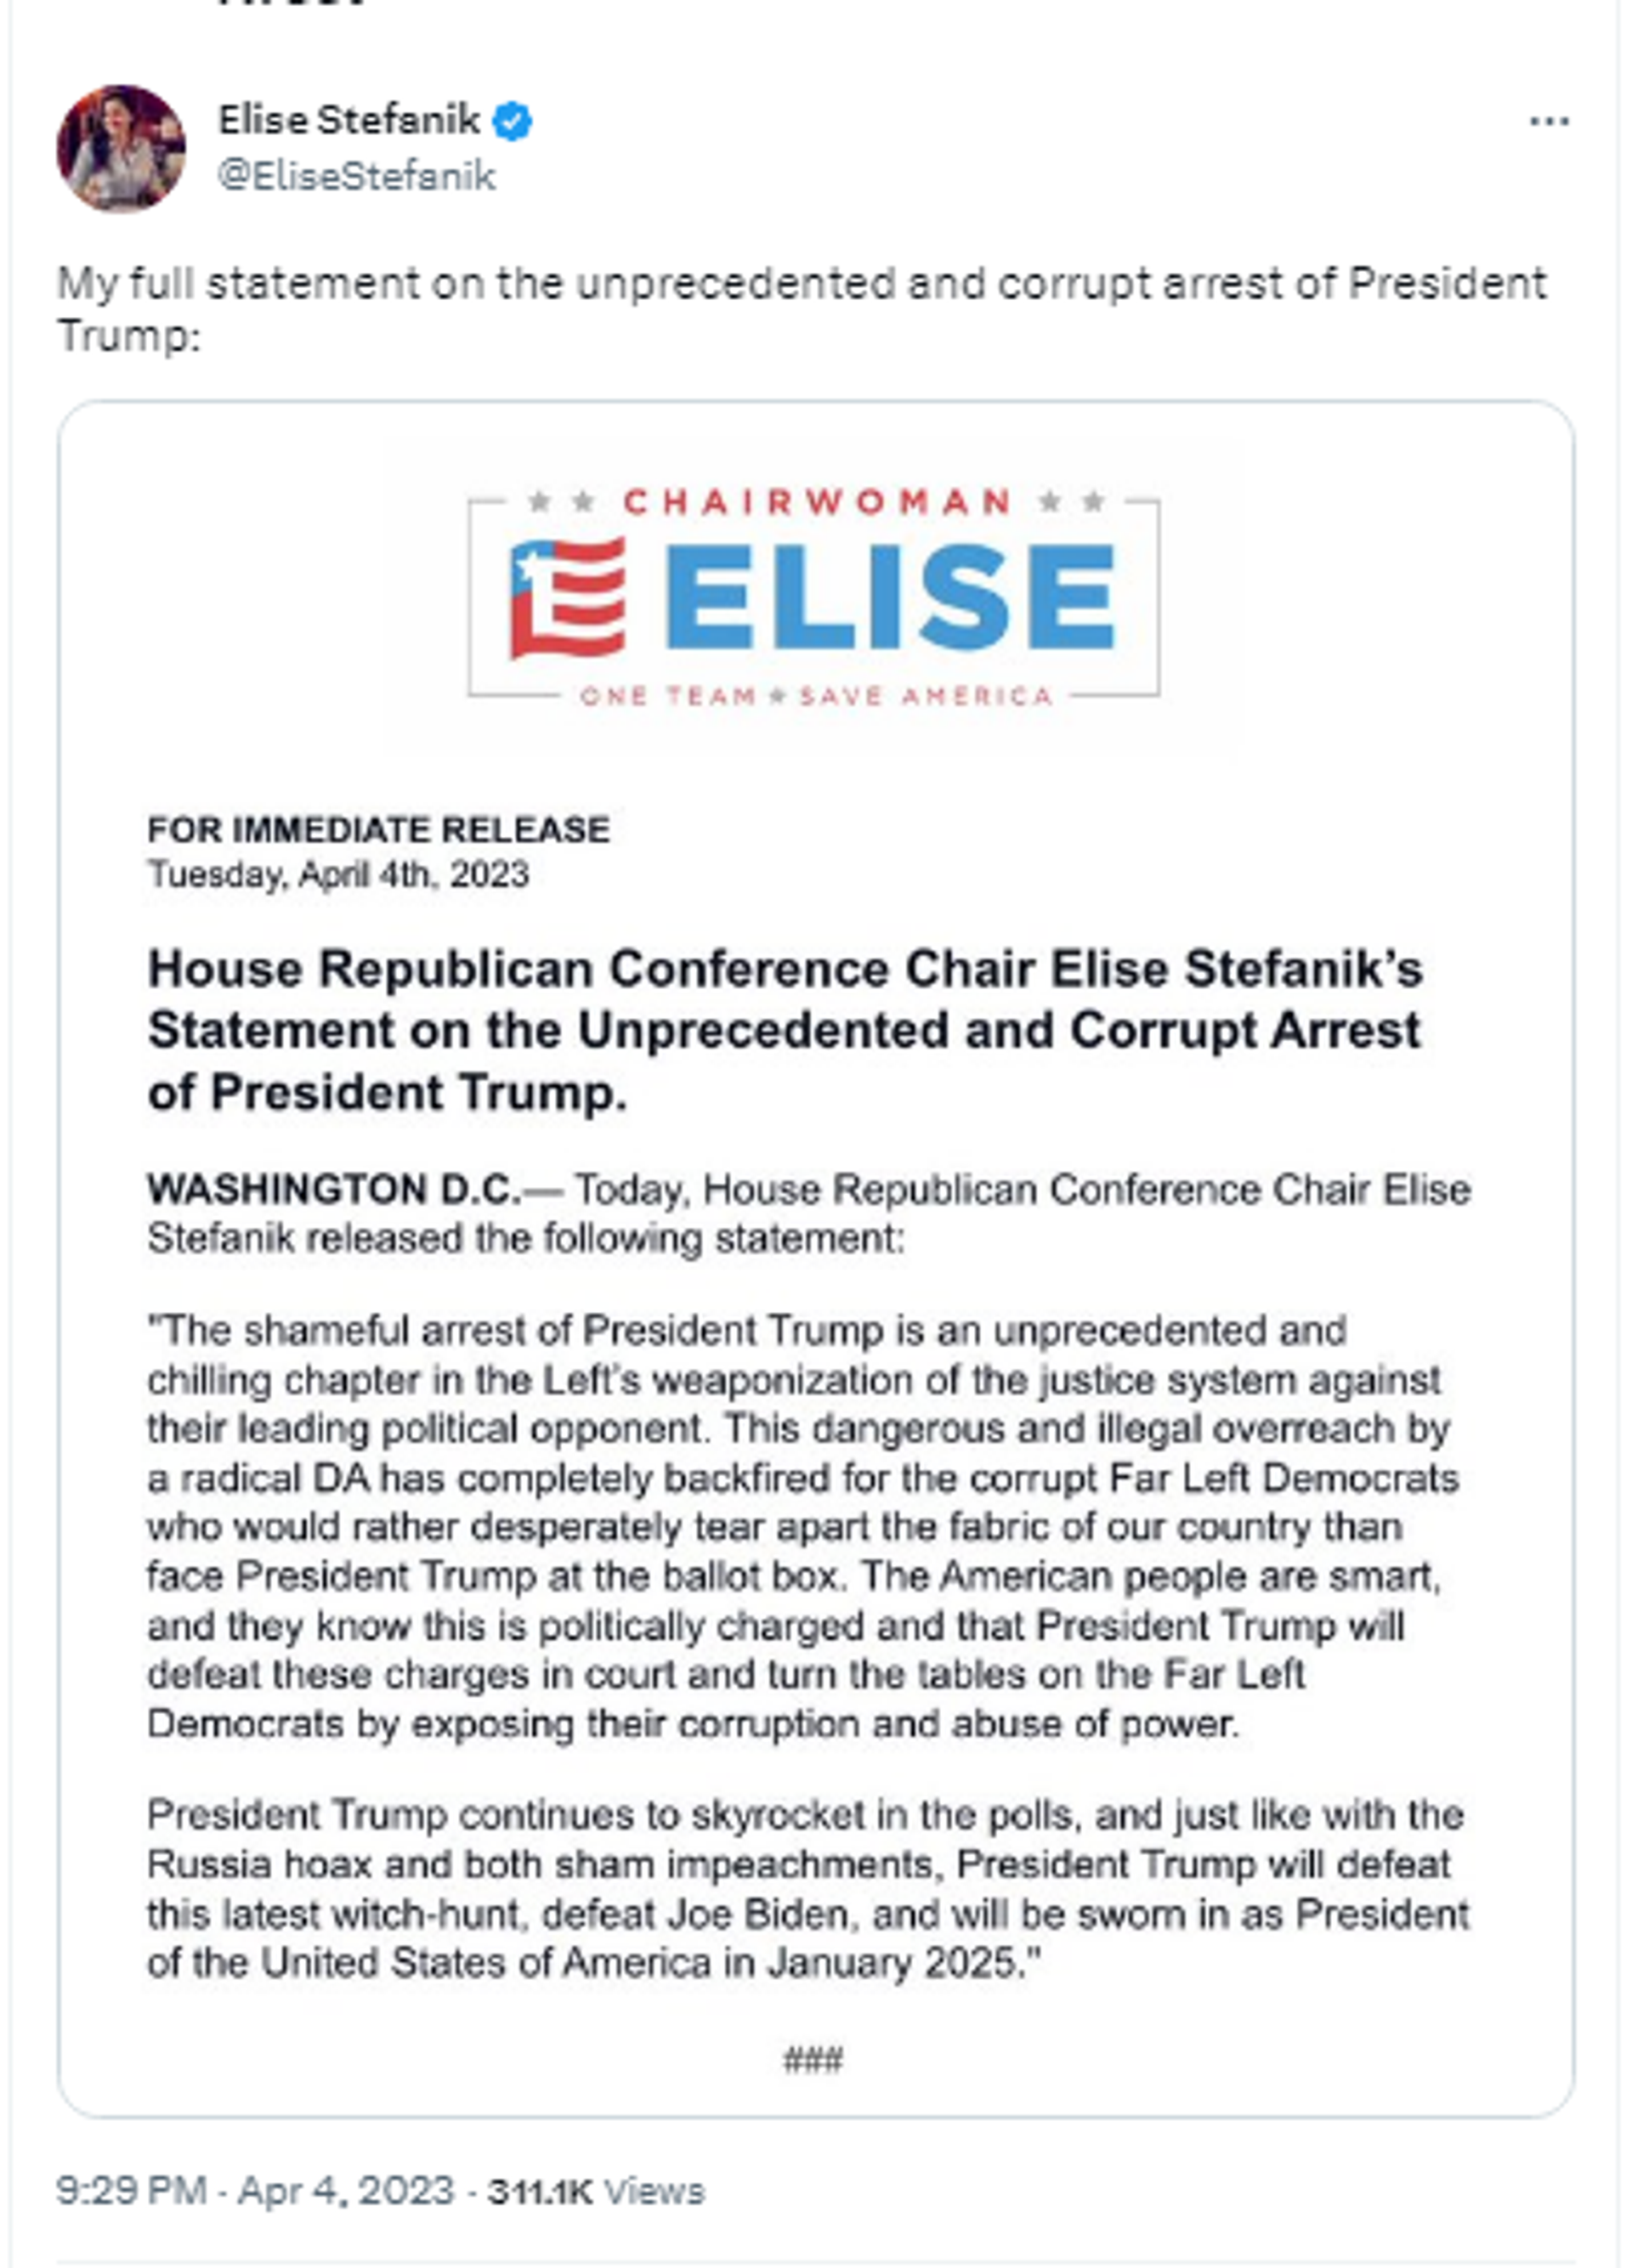 Screenshot of Twitter post by Rep. Elise Stefanik, R-N.Y., the House GOP Conference Chair. - Sputnik International, 1920, 05.04.2023